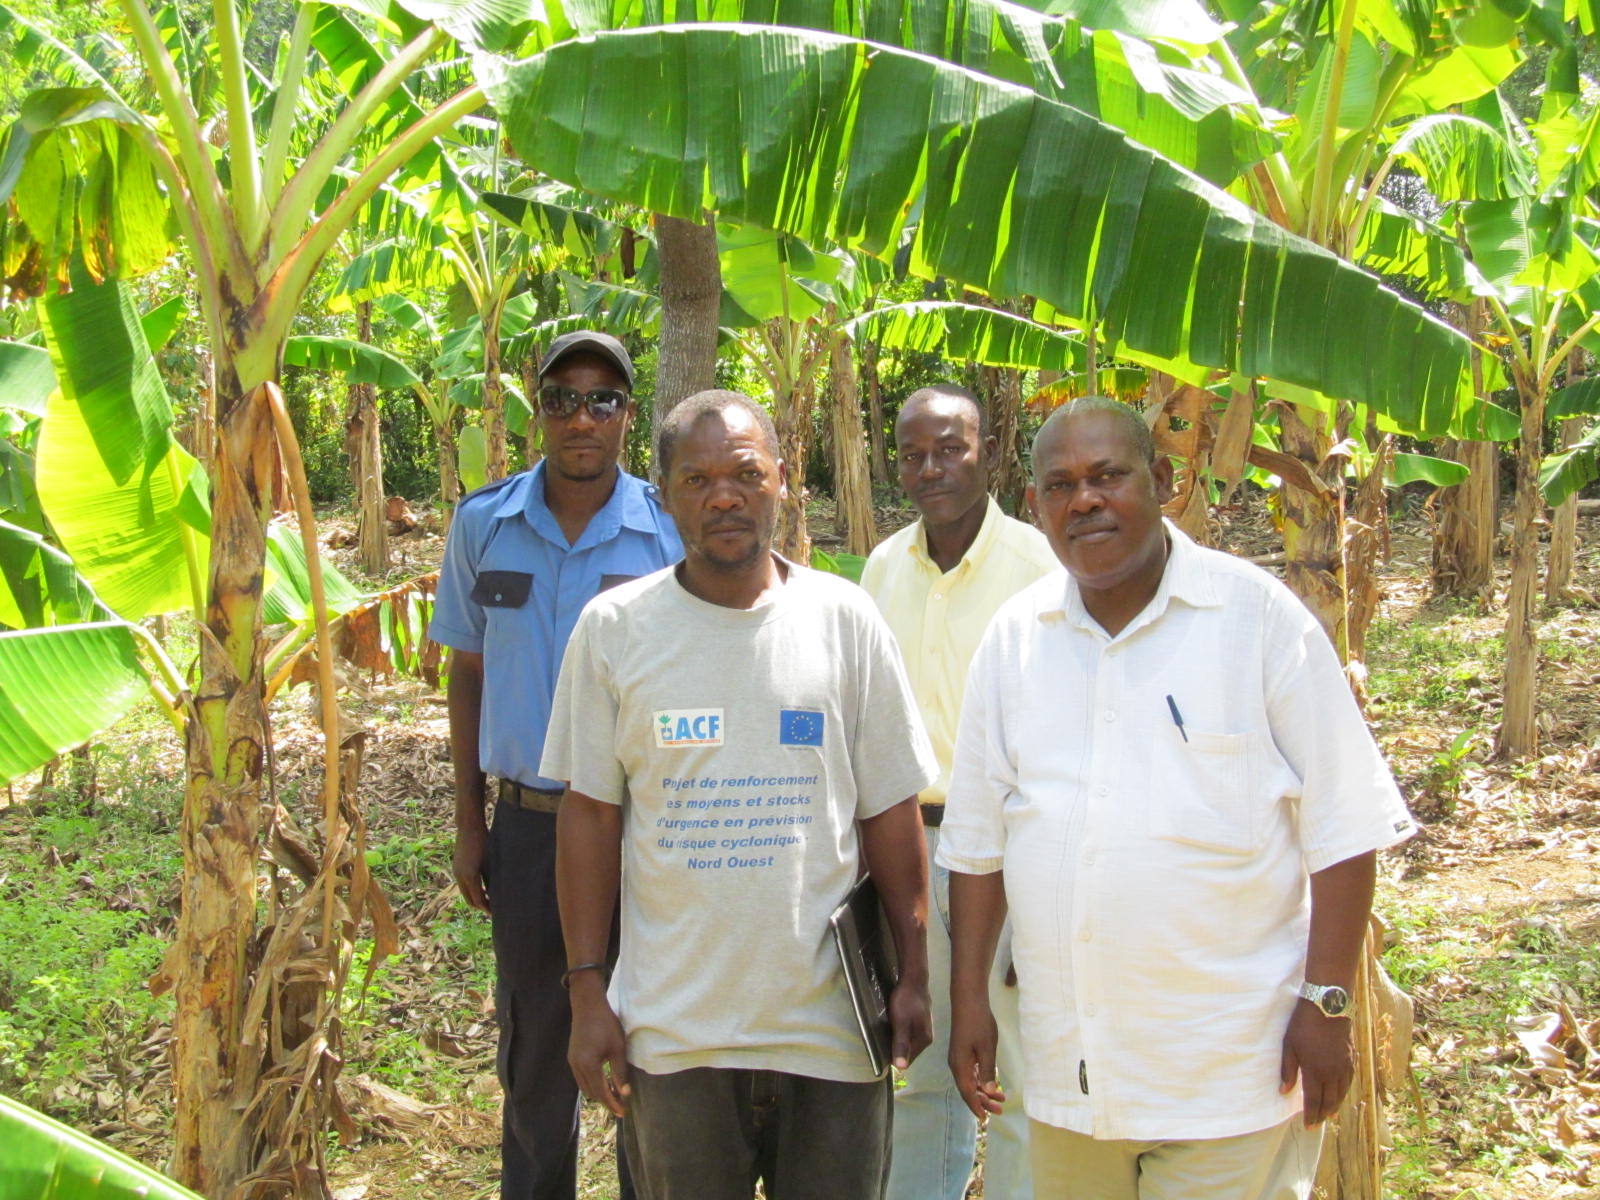 Group of men standing in banana groves